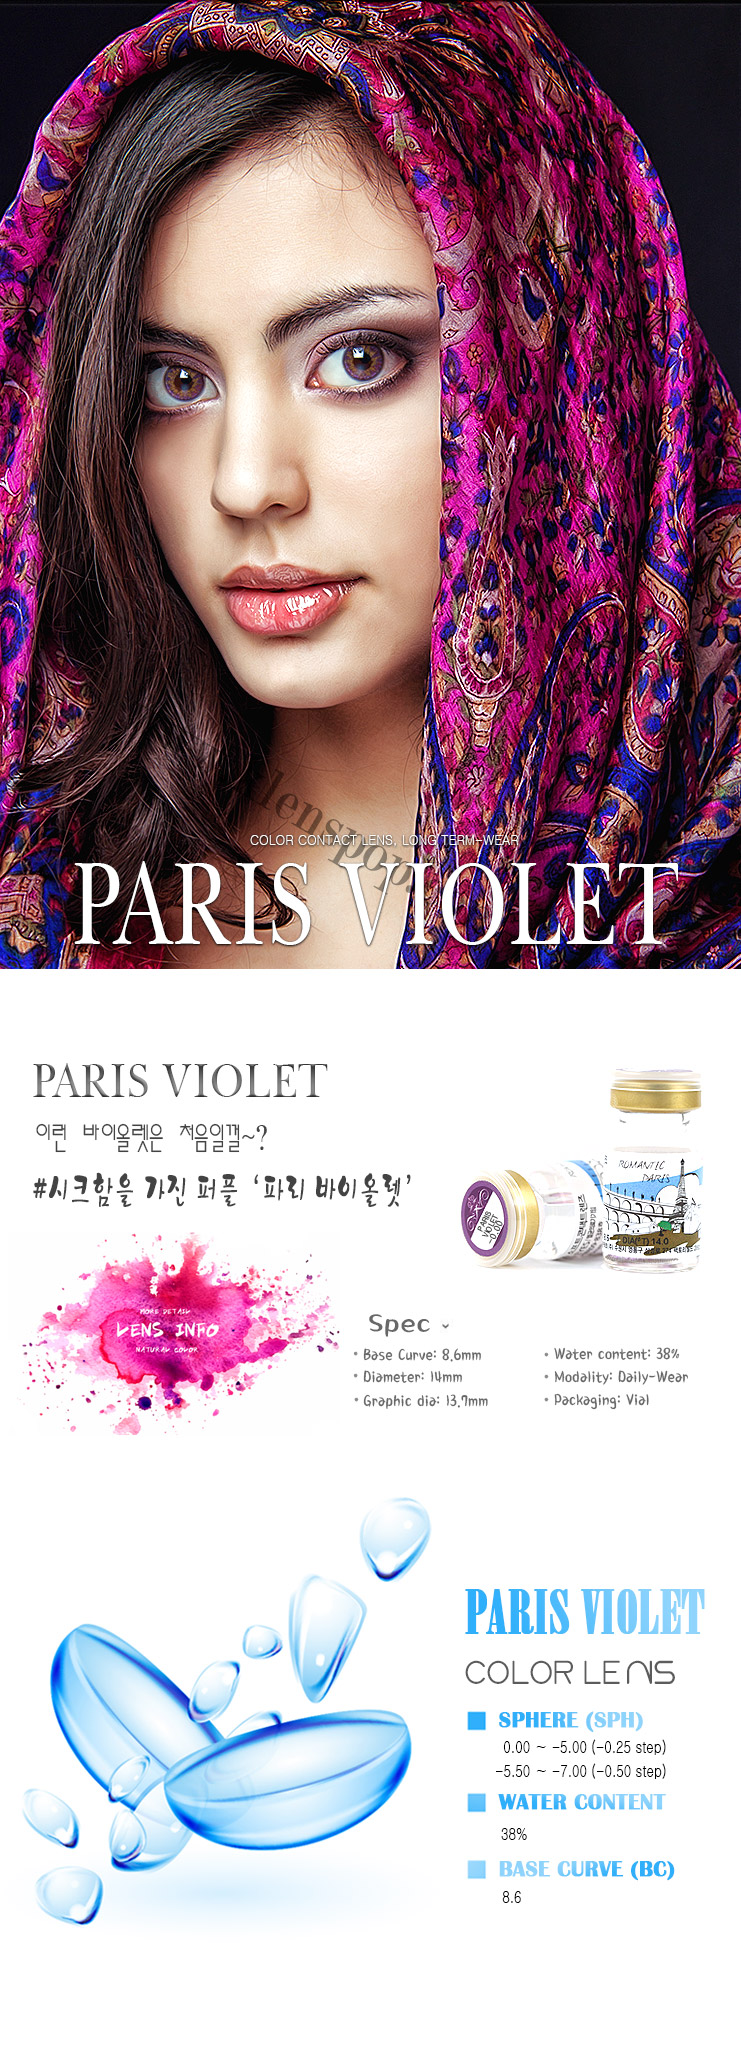 KLENSPOP Hello Lenspop Romantic Paris Violet Color Contact Lenses